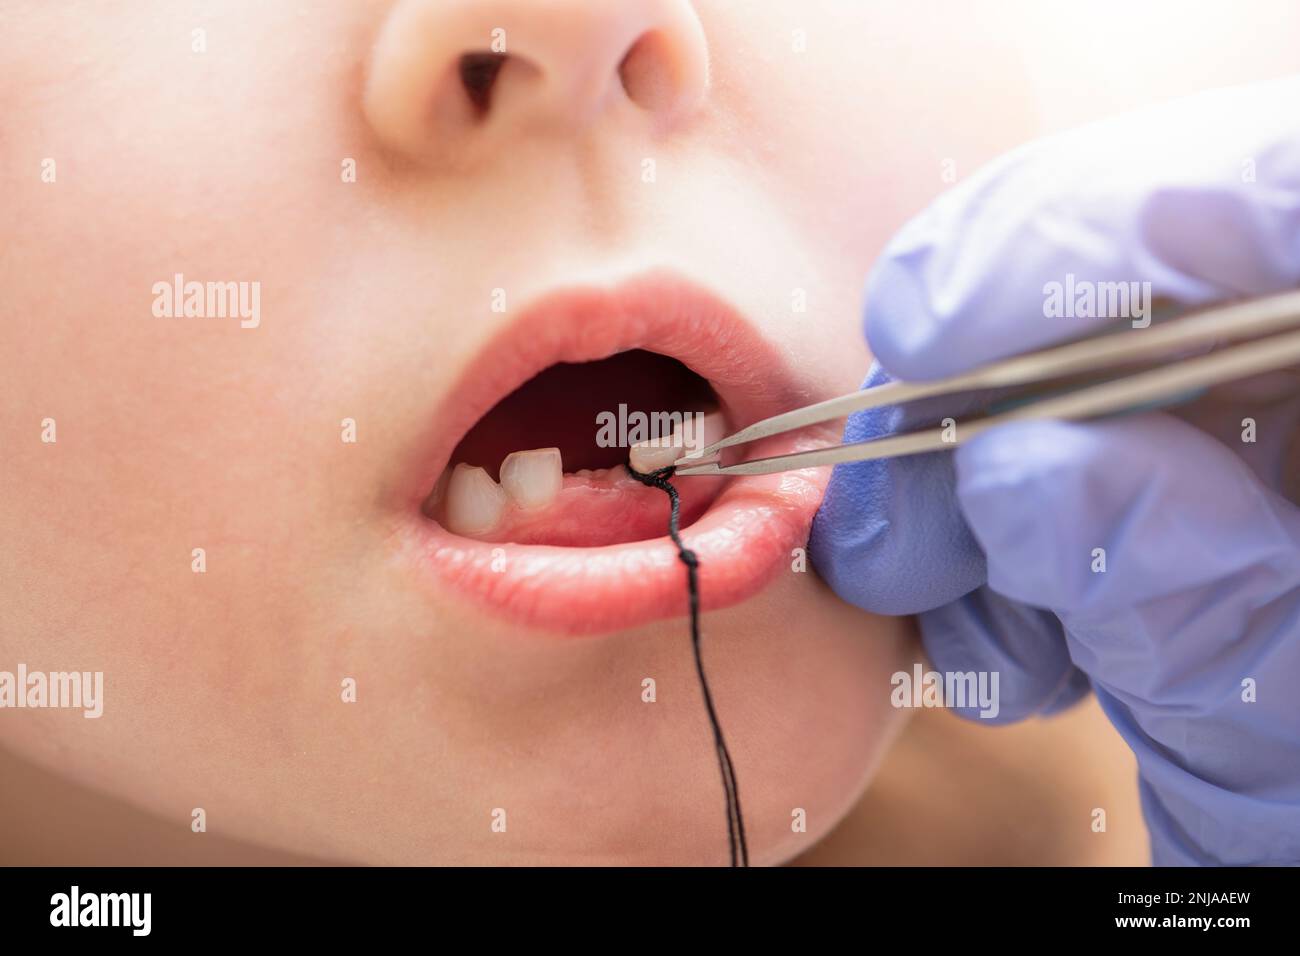 Extraktion eines Milchzahns bei einem Kind. Selbstextraktion eines Zahnes mit Zahnseide zu Hause. Binden Sie eine Zahnseide an den Zahn, um ihn herauszuziehen. Stockfoto